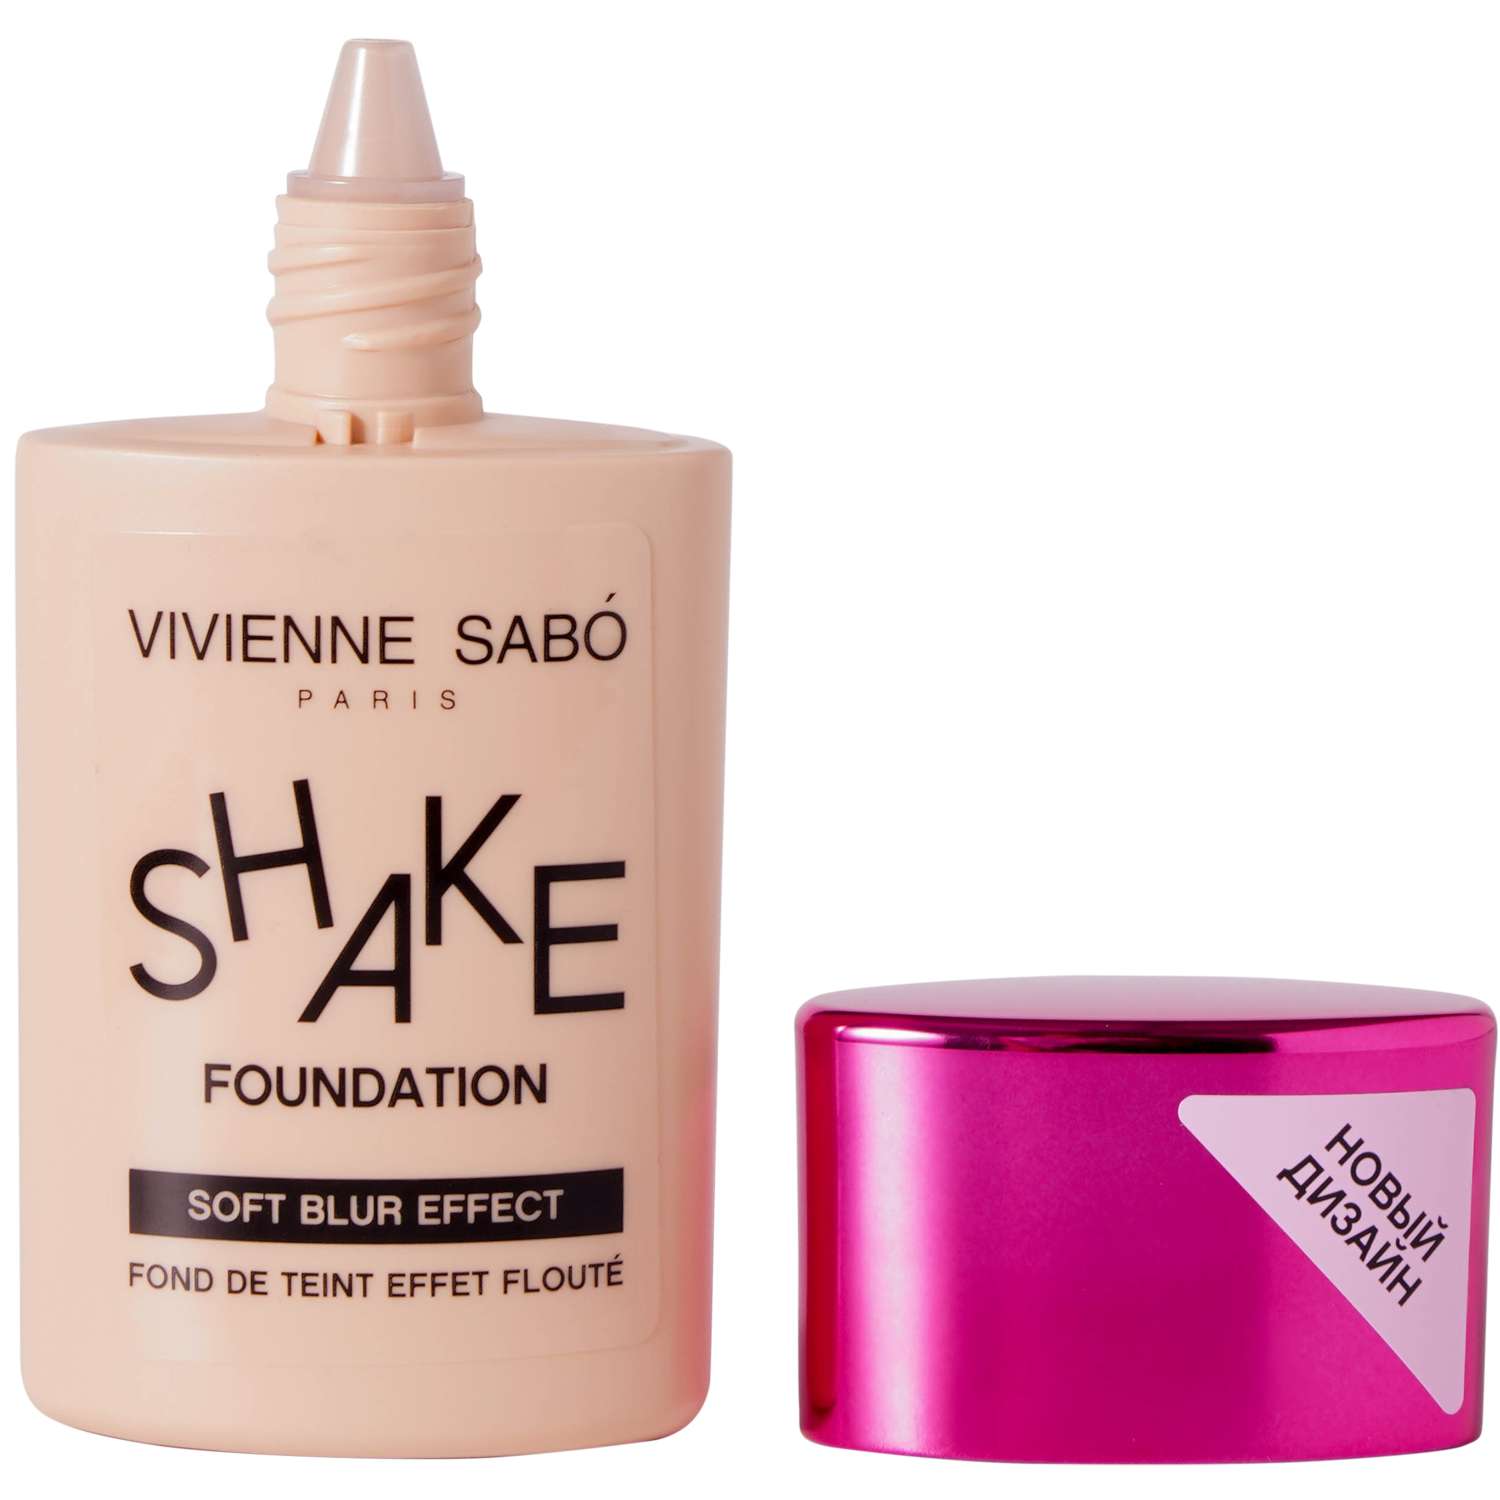 Тональный крем Vivienne Sabo с натуральным блюр эффектом Shakefoundation тон 03 - фото 3